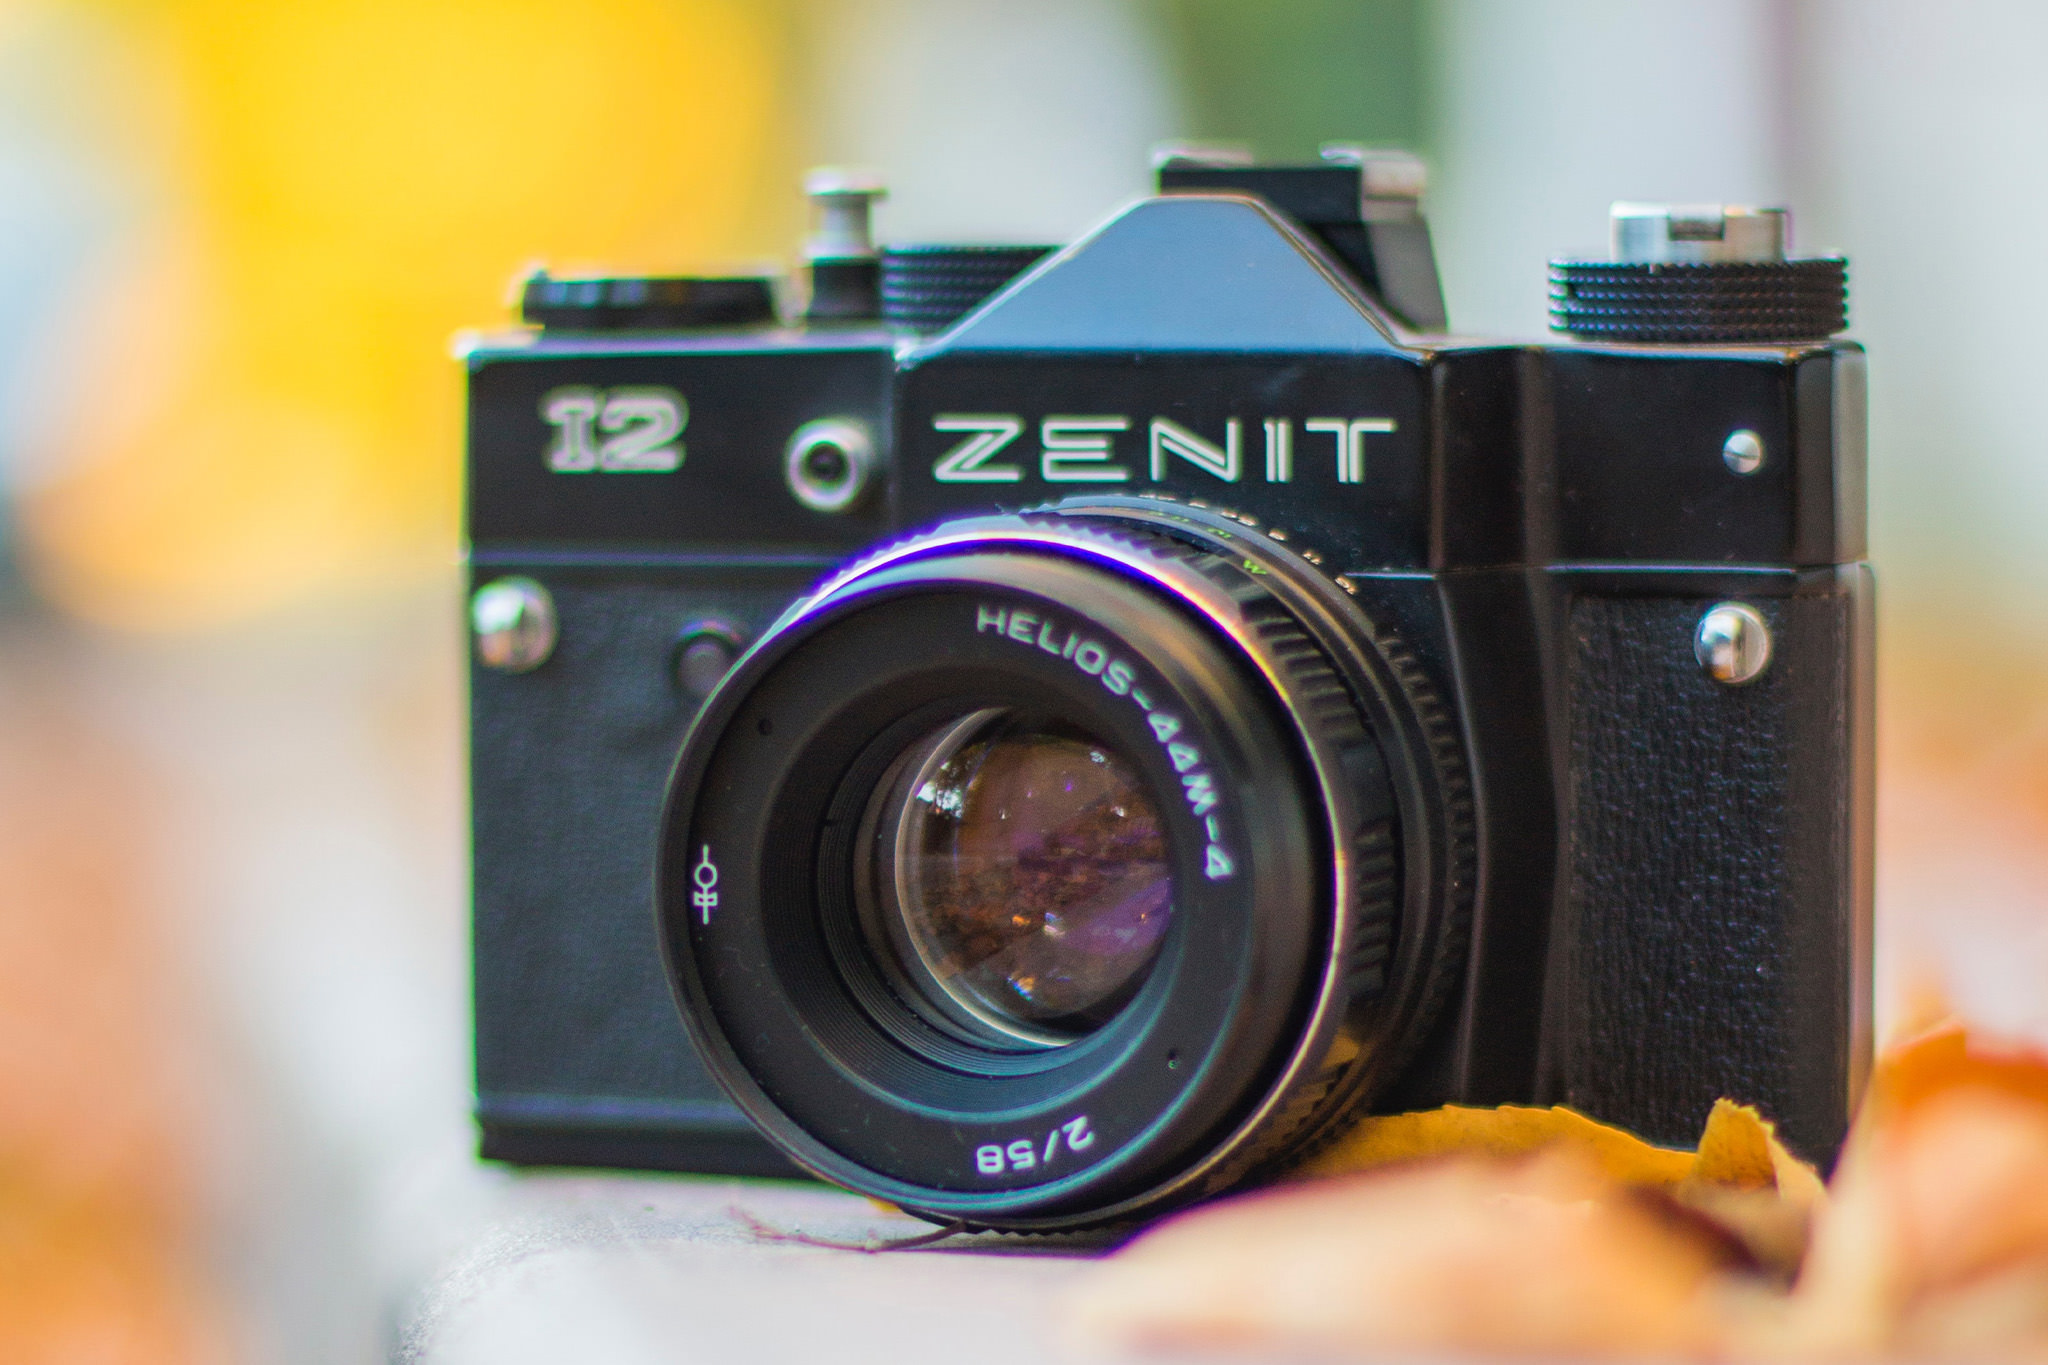 zenit-12-kamera-slr-udssr-35mm